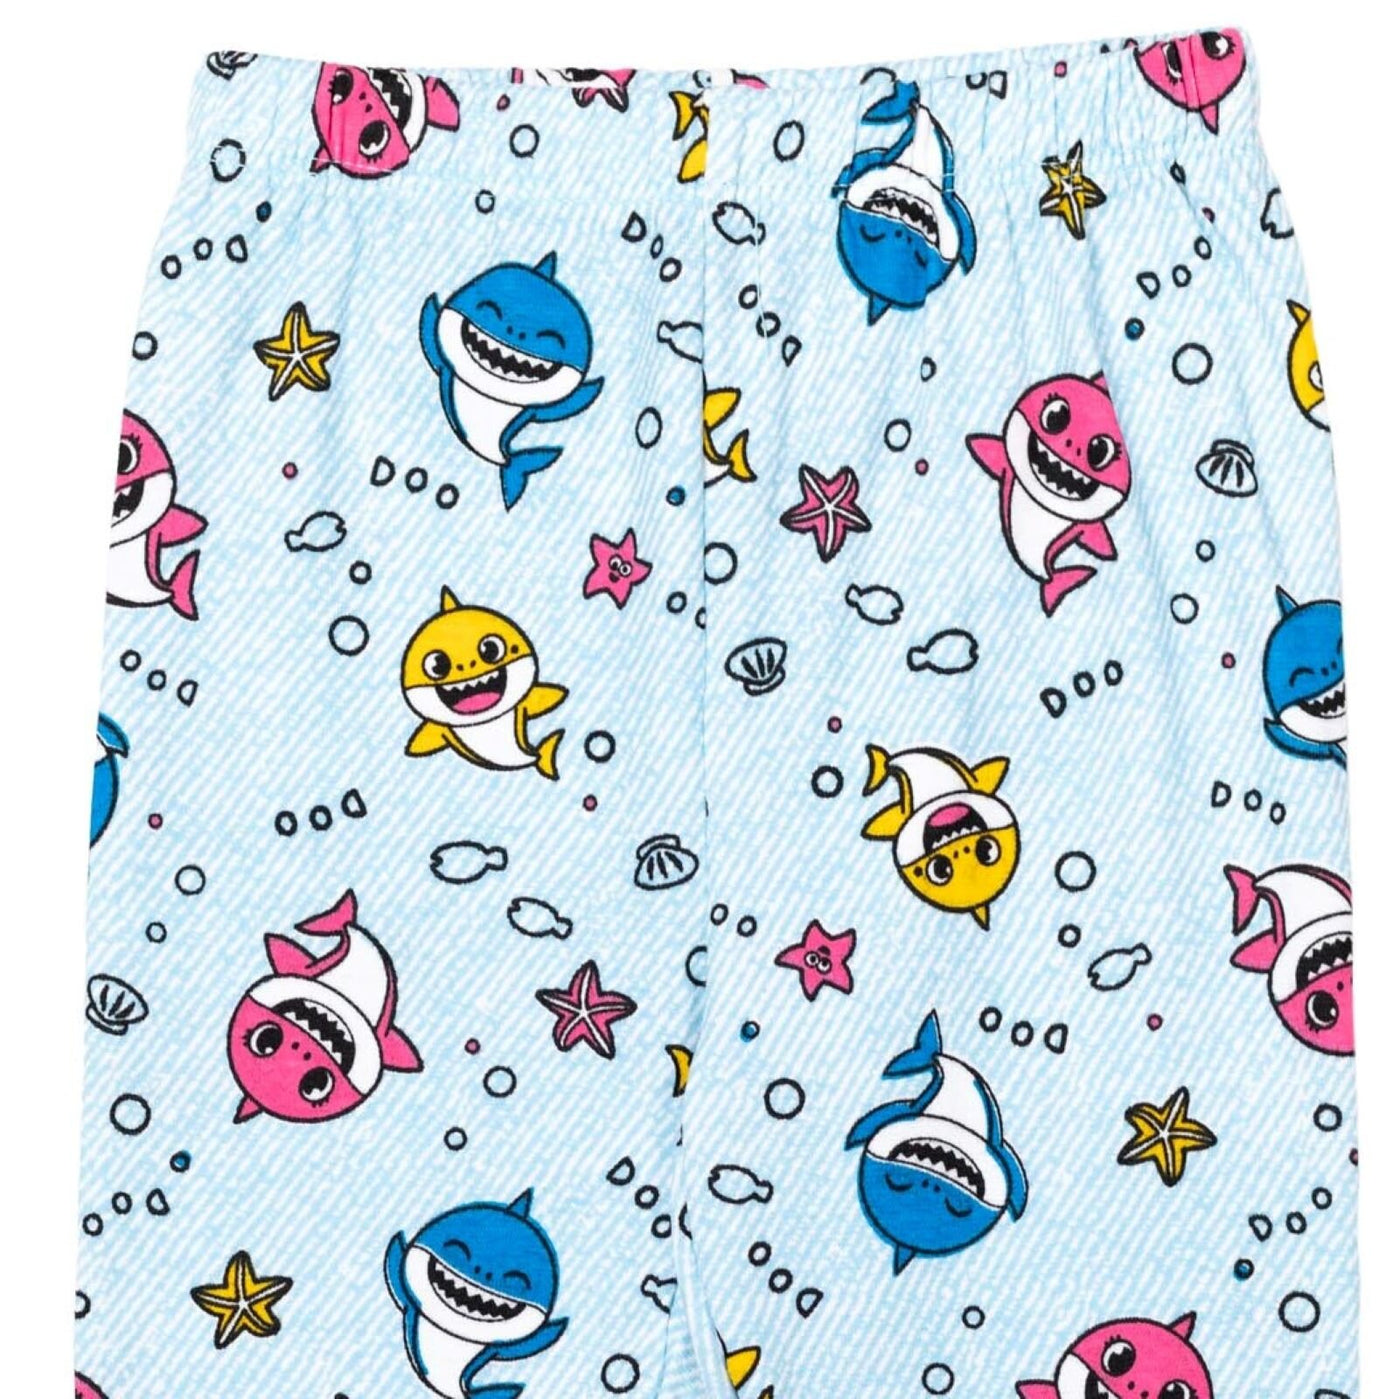 Pinkfong Baby Shark Peplum T-Shirt Leggings and Scrunchie 3 Piece Outfit Set